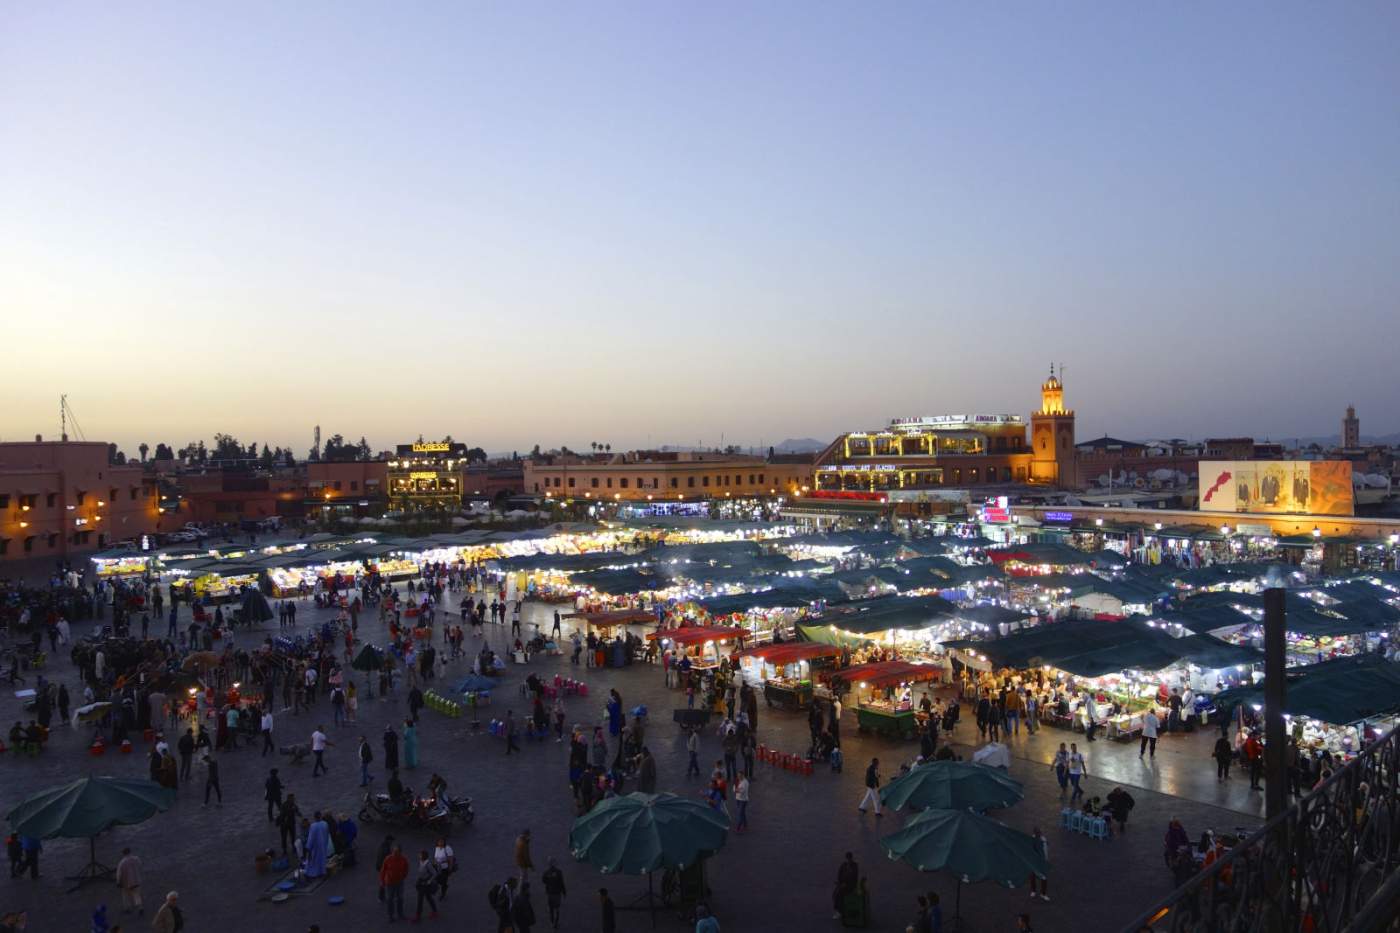 Djemaa el Fna - Nachtaufnahme des Platz der Gehängten in Marrakech